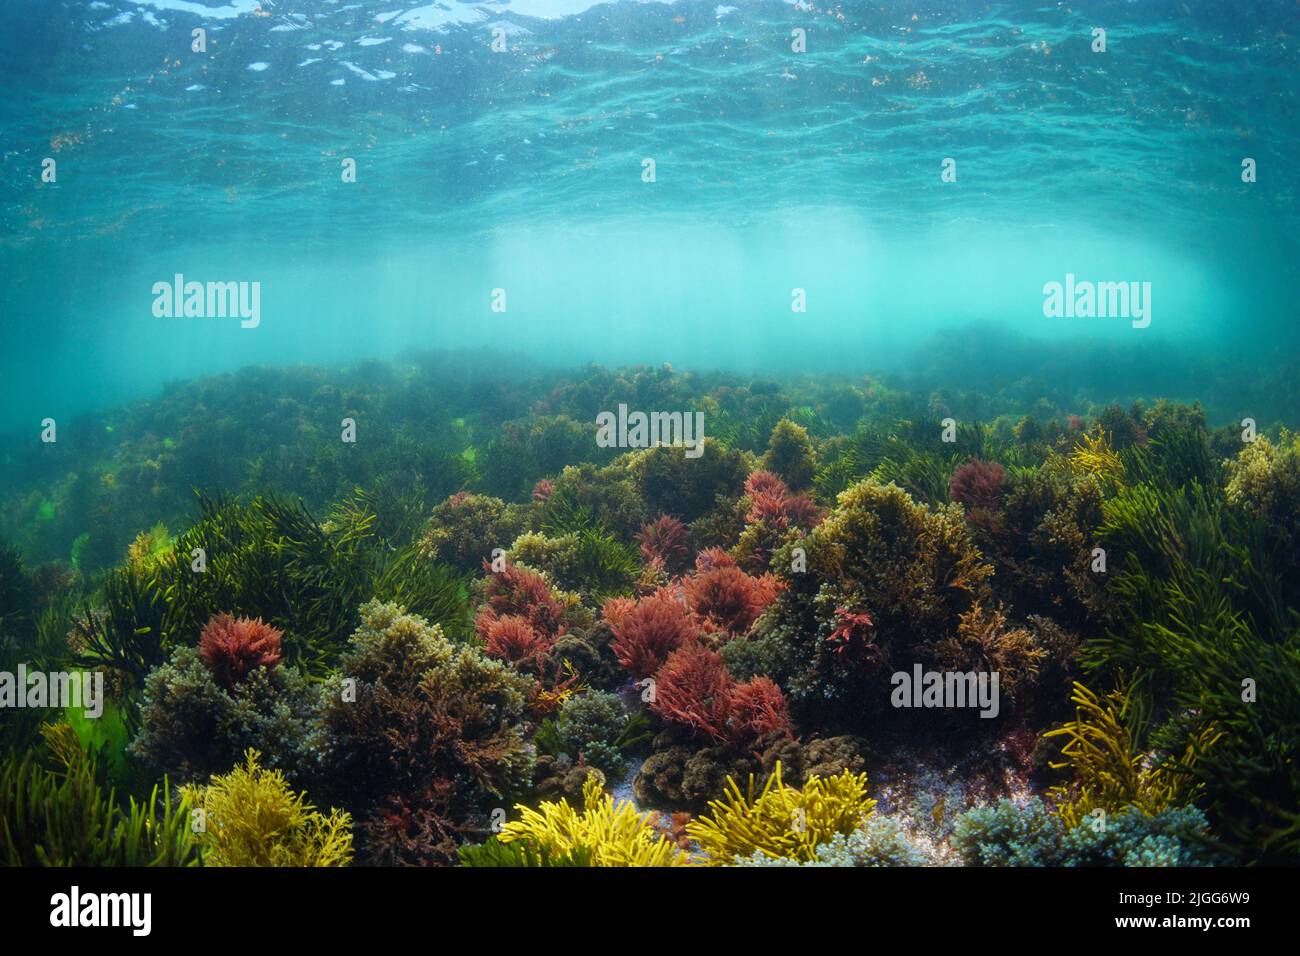 Natürliche Unterwasserlandschaft im Atlantischen Ozean mit bunten Algen unter der Wasseroberfläche, Spanien, Galizien Stockfoto